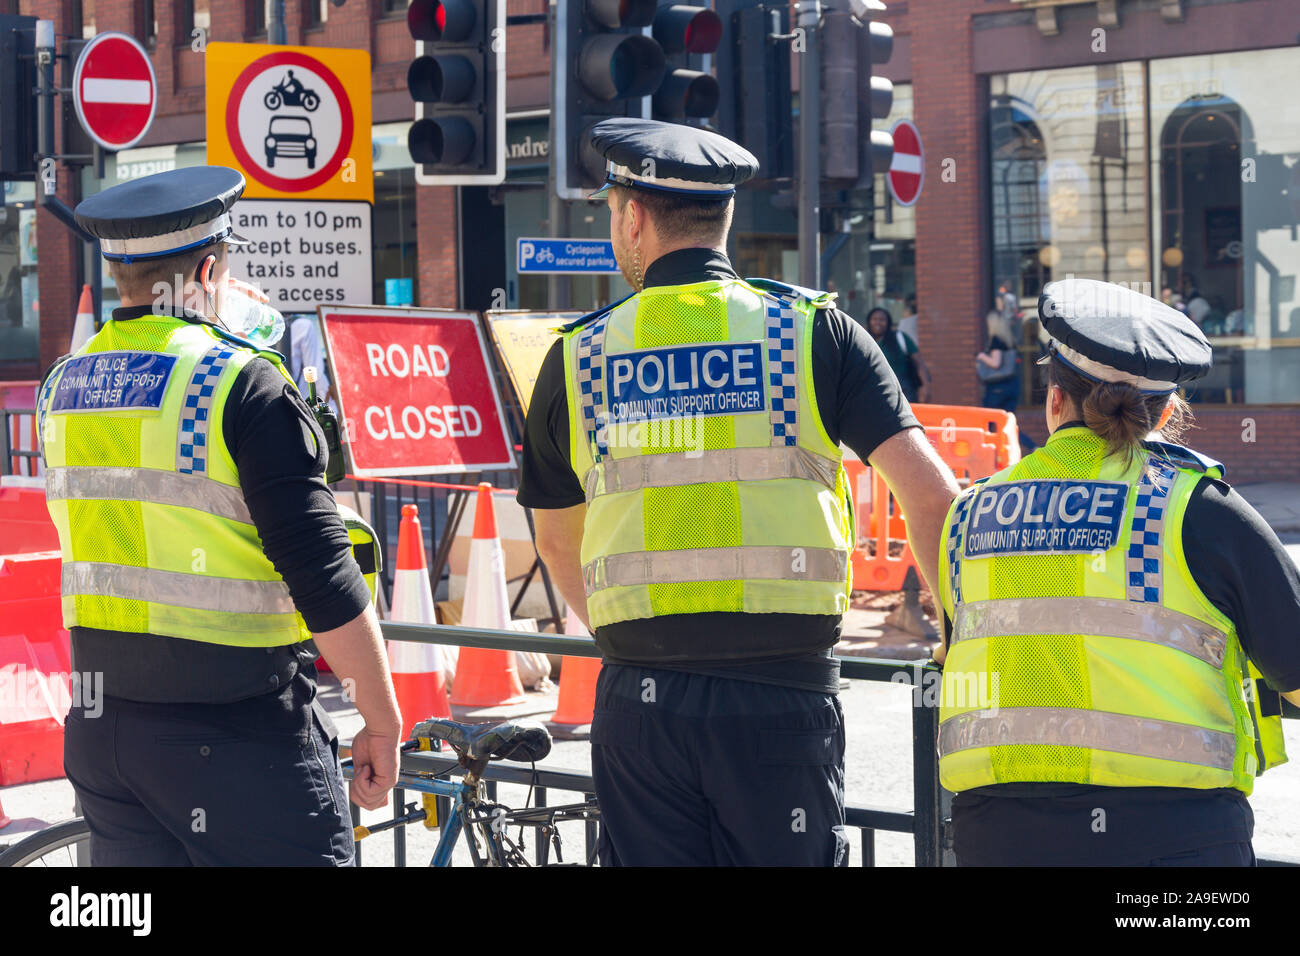 Les agents de police de soutien communautaire dans le centre-ville, Leeds, West Yorkshire, England, United Kingdom Banque D'Images